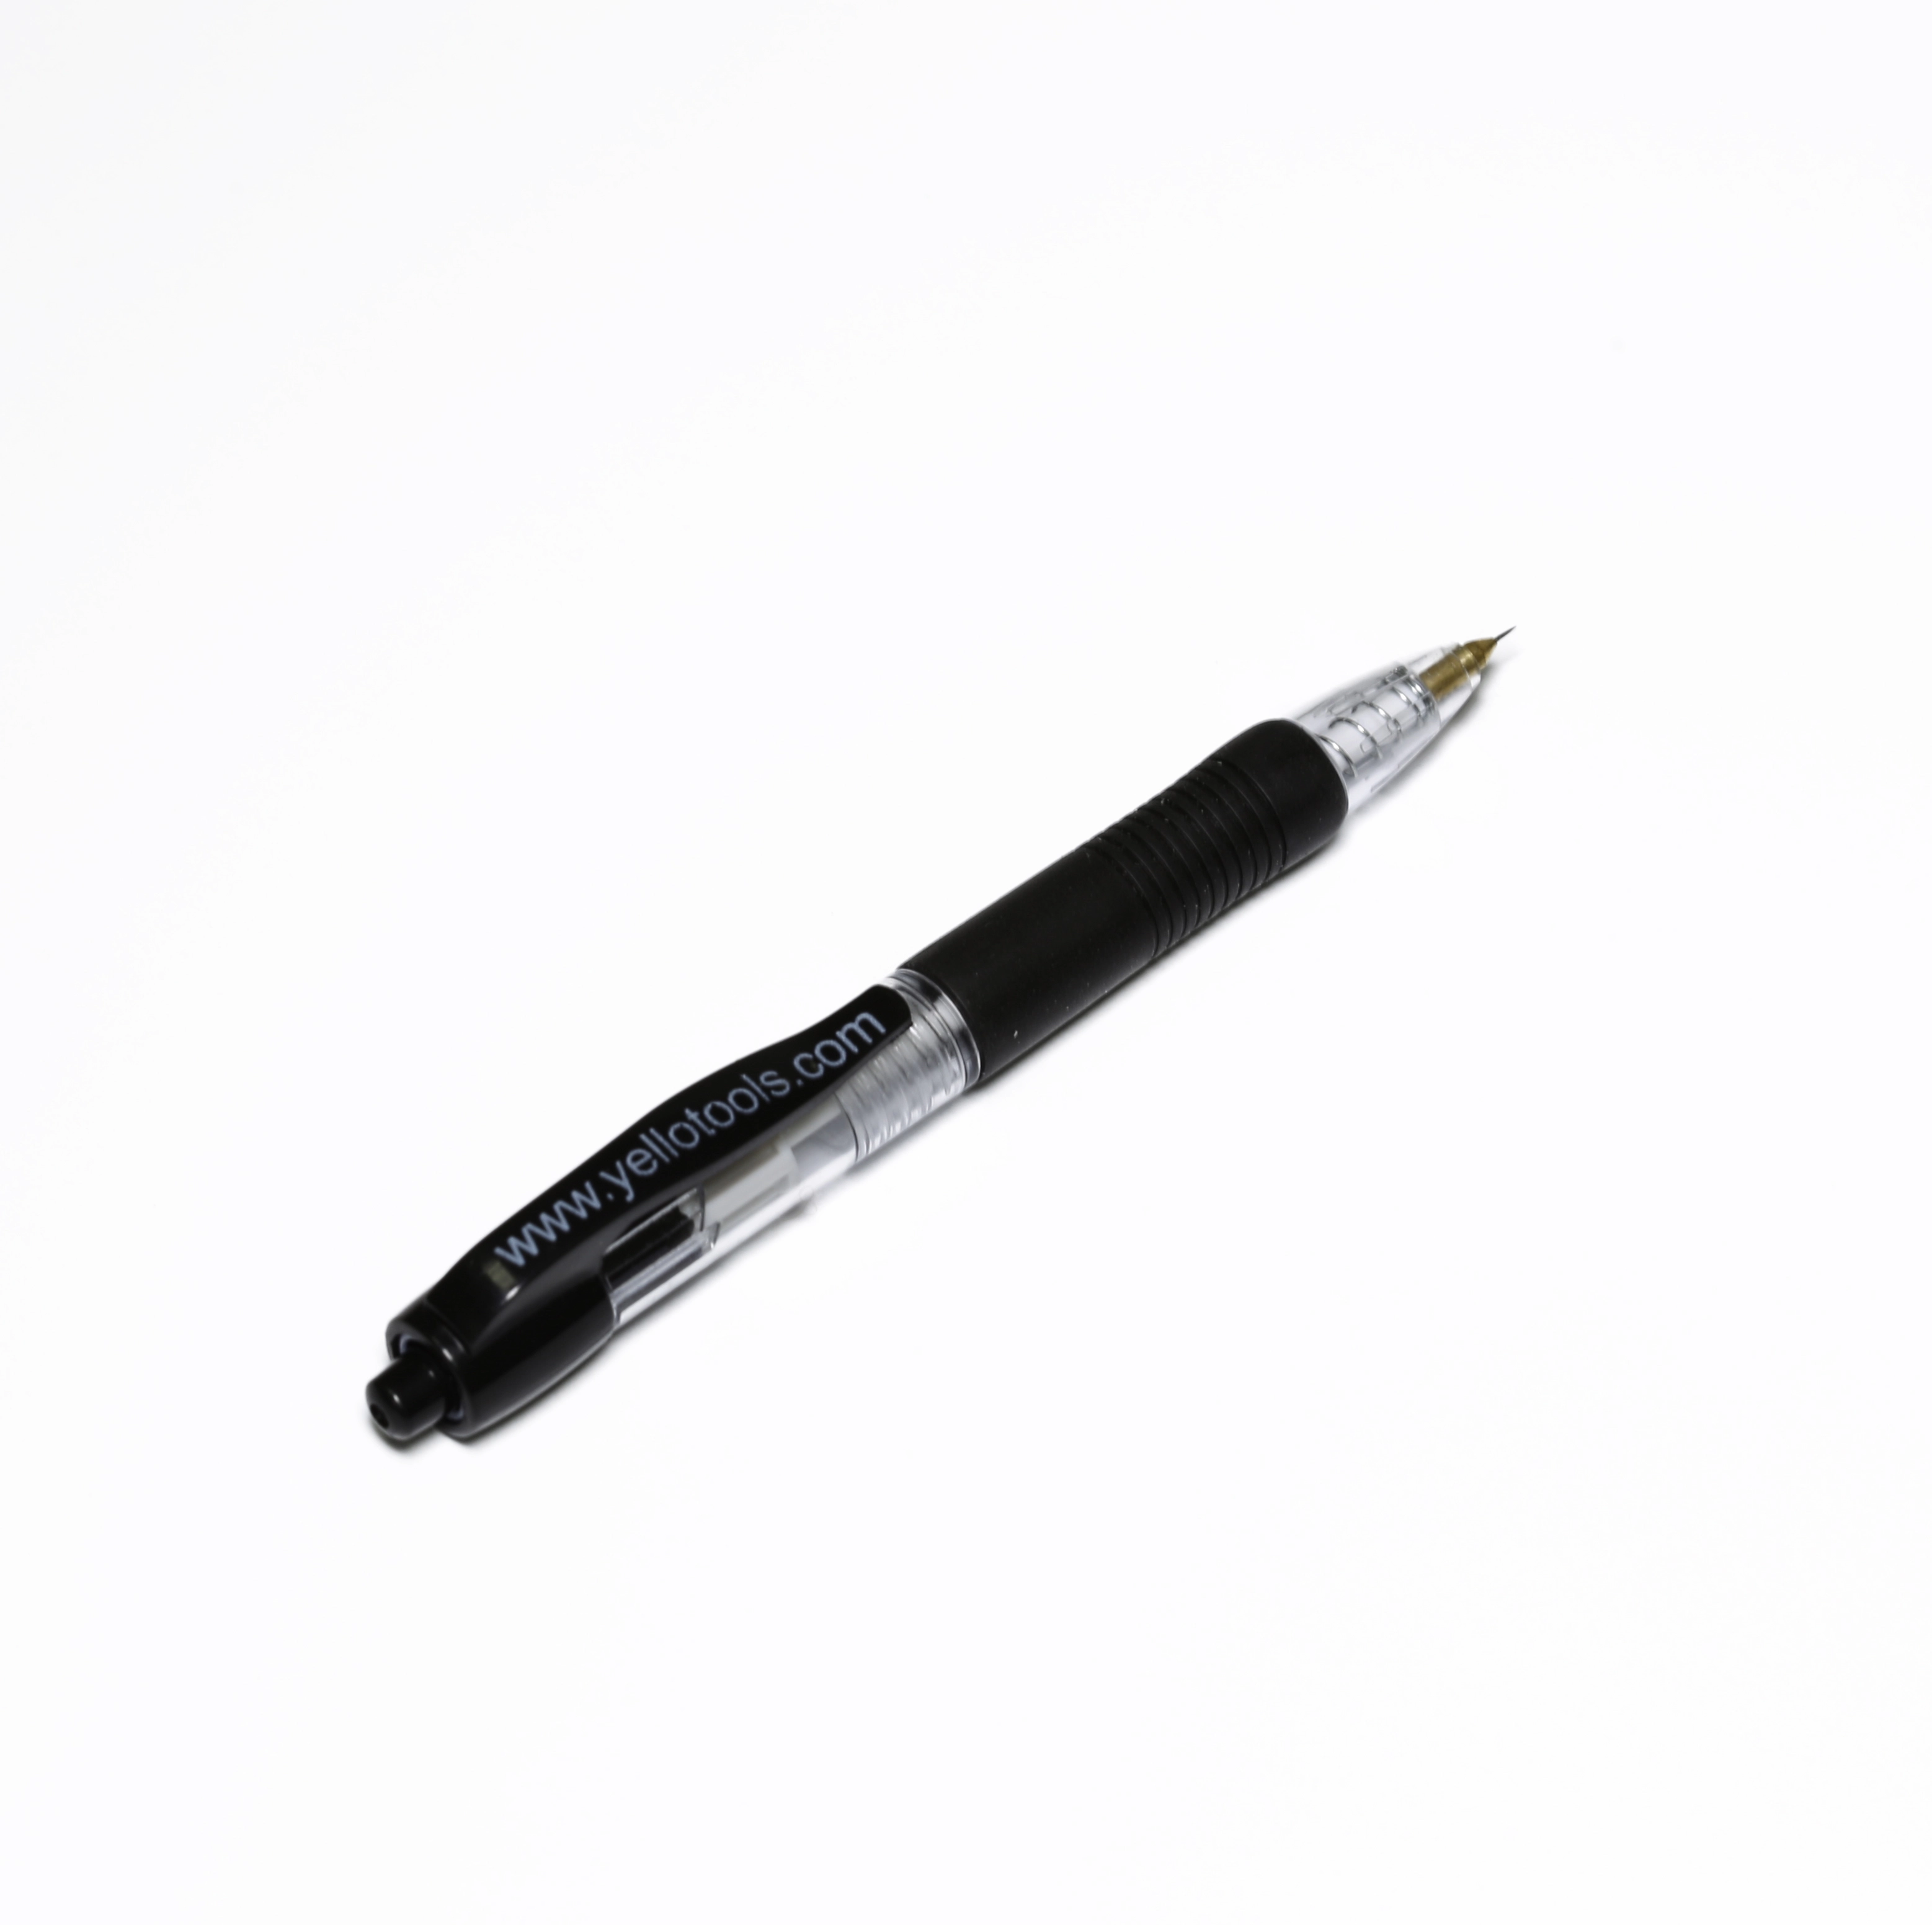 Ручка-иголка YelloPen Mini для прокалывания пузырей пленки